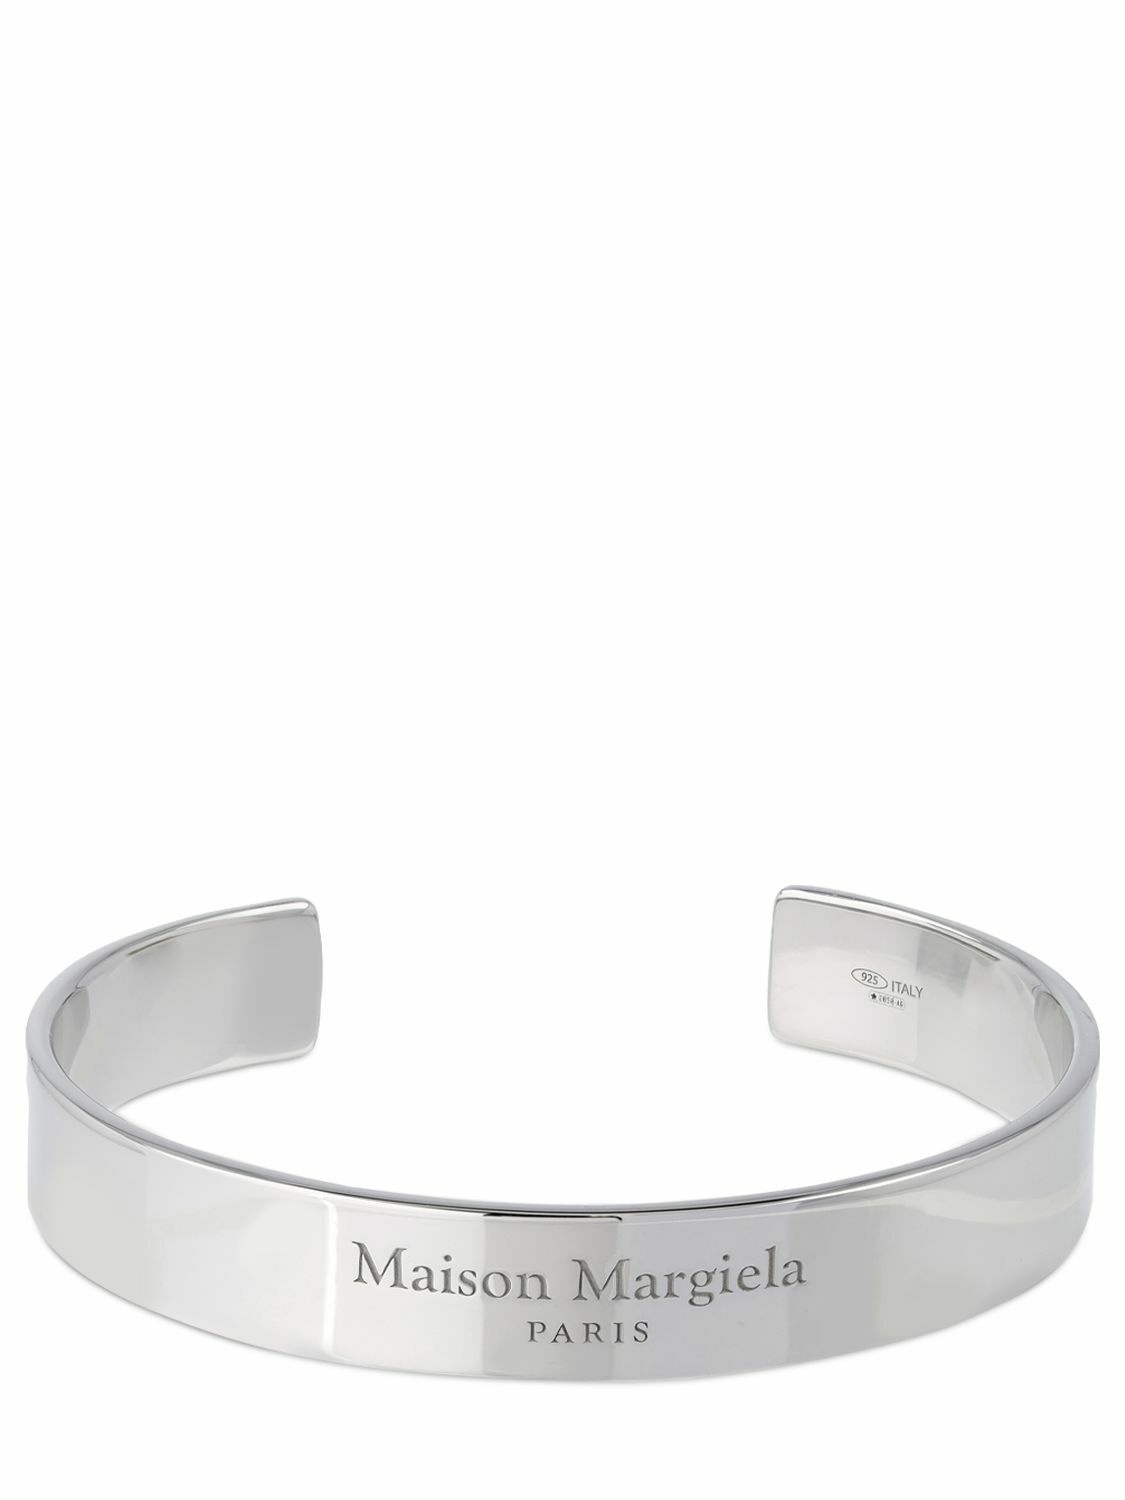 Photo: MAISON MARGIELA - Logo Engraved Thick Cuff Bracelet